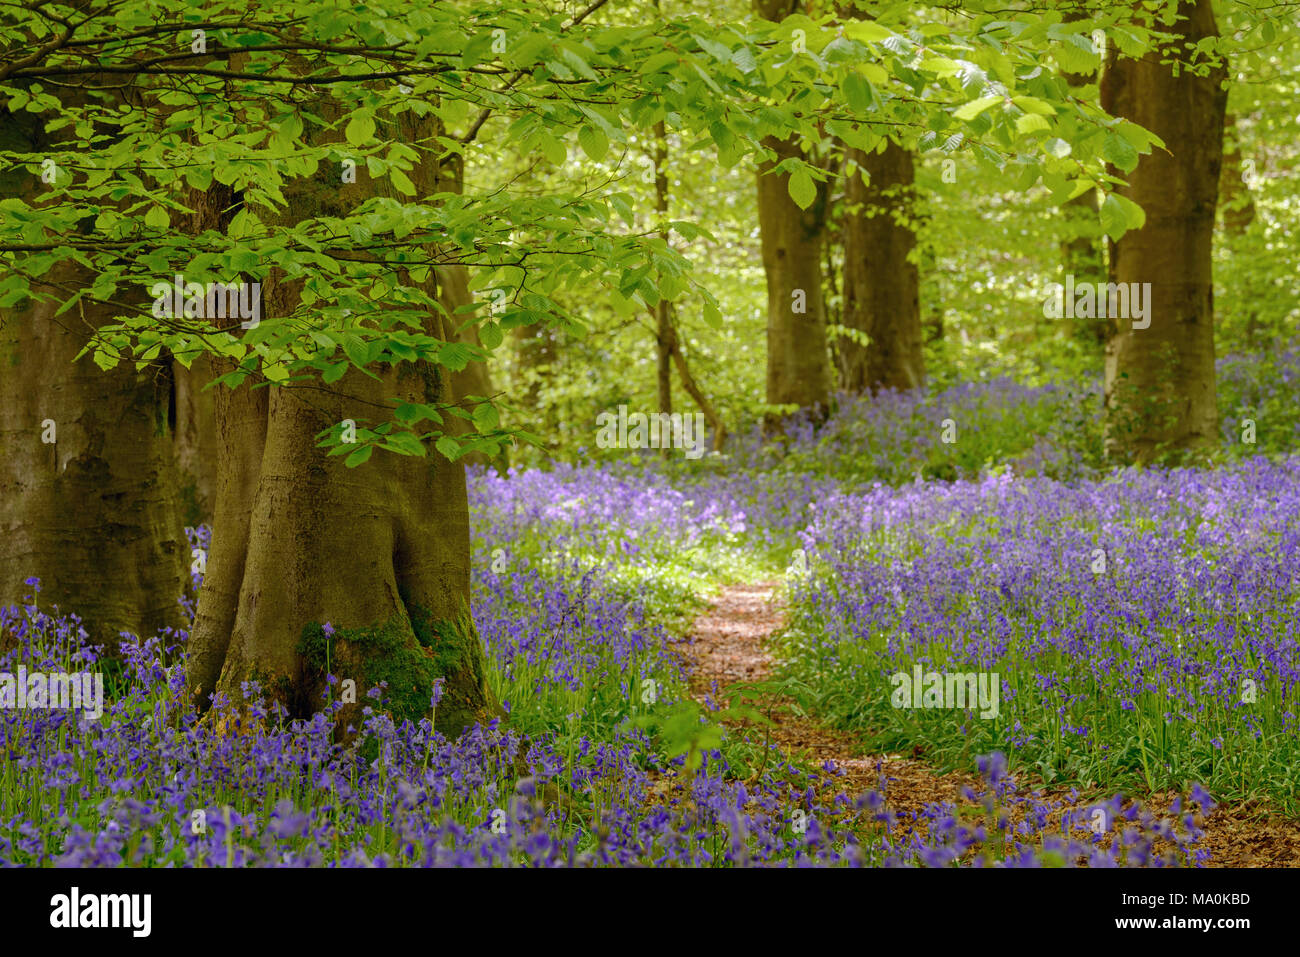 Un sentier à travers bois près de jacinthes de Micheldever, Hampshire sur une journée ensoleillée en mai. Banque D'Images